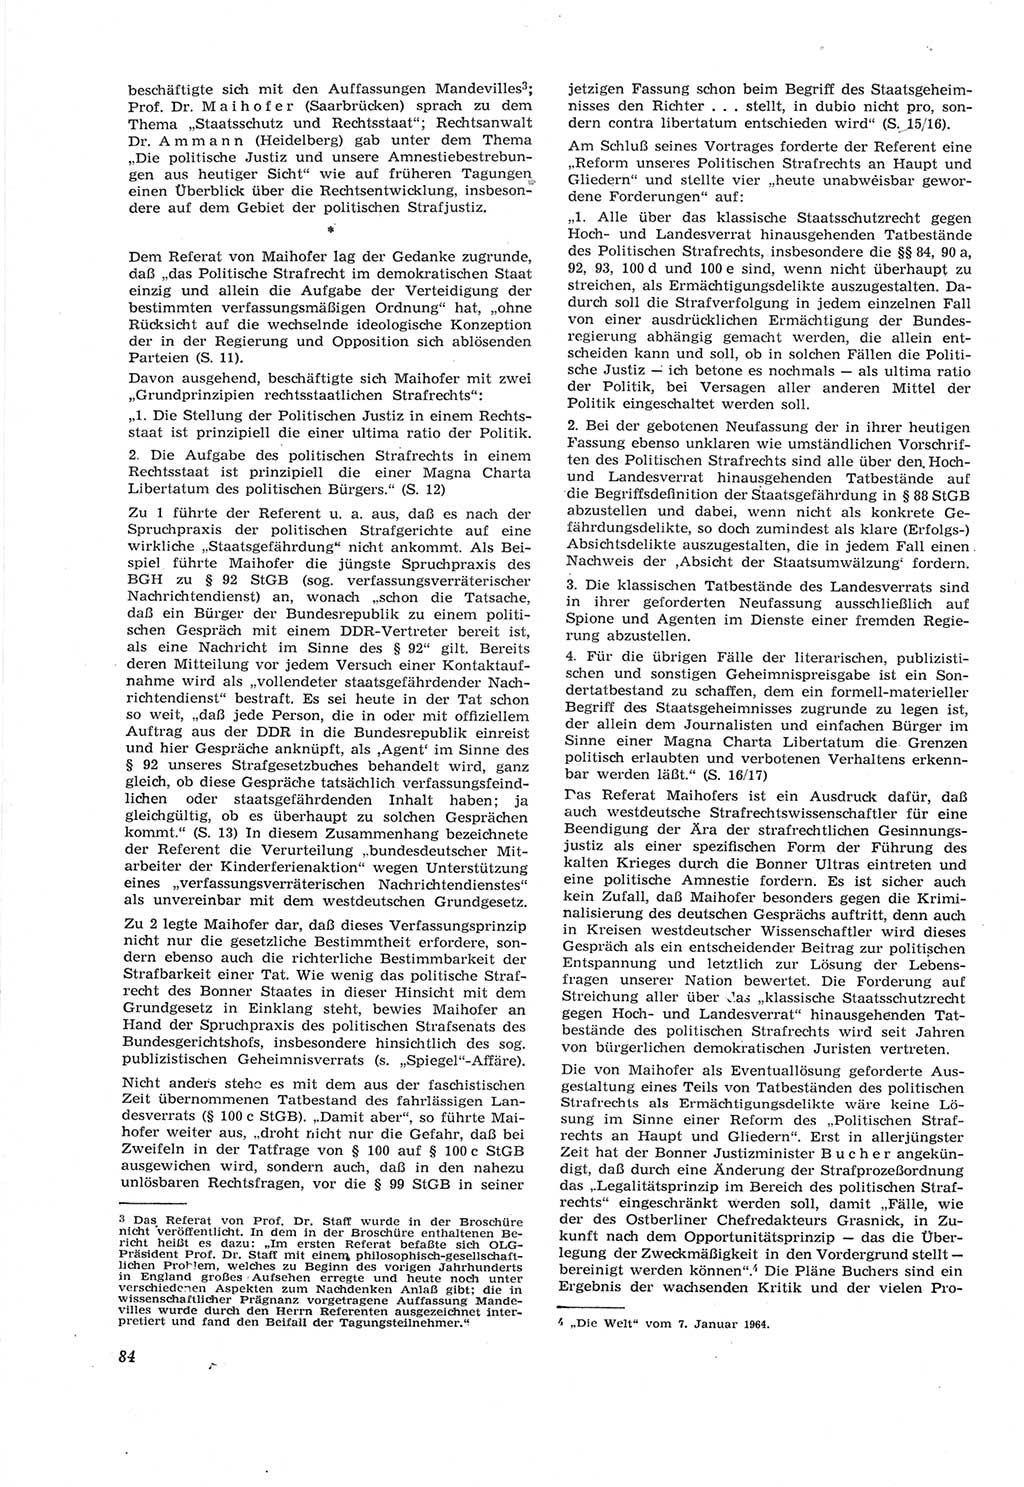 Neue Justiz (NJ), Zeitschrift für Recht und Rechtswissenschaft [Deutsche Demokratische Republik (DDR)], 18. Jahrgang 1964, Seite 84 (NJ DDR 1964, S. 84)